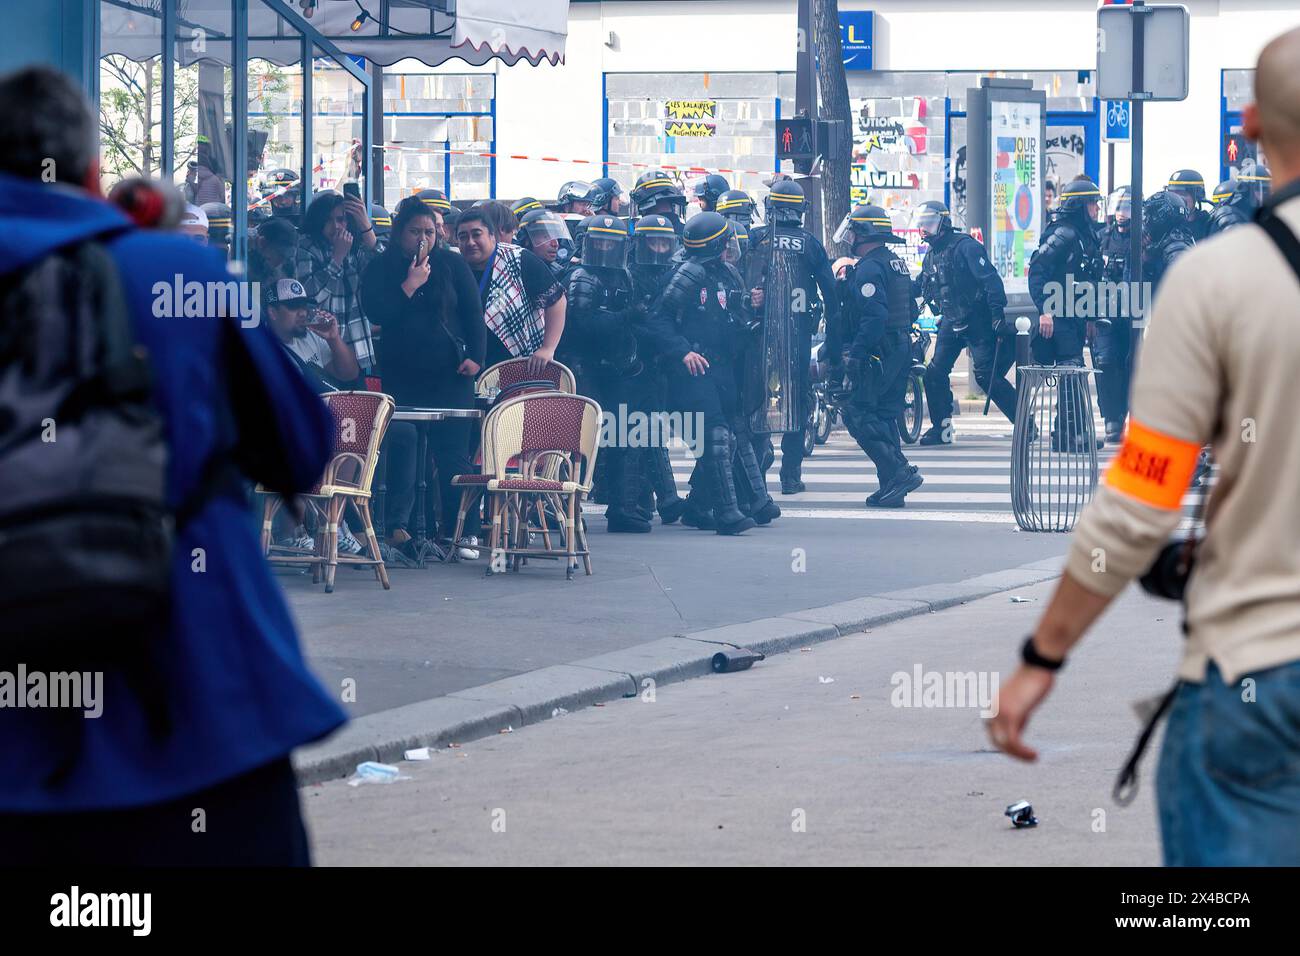 Touristen suchen nach Deckung, während die Polizei und Demonstranten während des jährlichen marsches zum Internationalen Arbeitertag in Paris am 1. Mai, dem Tag des 1. Mai, in der Nation zusammenstoßen. Während der Proteste im Mai lauern die Pariser Straßen mit Feuerwerken und Stuntgranaten, während die Arbeiter ihre Rechte in einem Meer von Spruchbändern und Gesängen behaupten. Inmitten der Inbrunst brechen Zusammenstöße zwischen Demonstranten und Aufstandspolizisten aus, Tränengas füllt die Luft, während die Spannungen eskalieren. Die Veranstaltung unterstreicht den anhaltenden Kampf für Arbeitnehmerrechte und soziale Gerechtigkeit, während Aktivisten sich in einem kollektiven Aufruf zum Wandel auf den Straßen der französischen Hauptstadt vereinen. Stockfoto